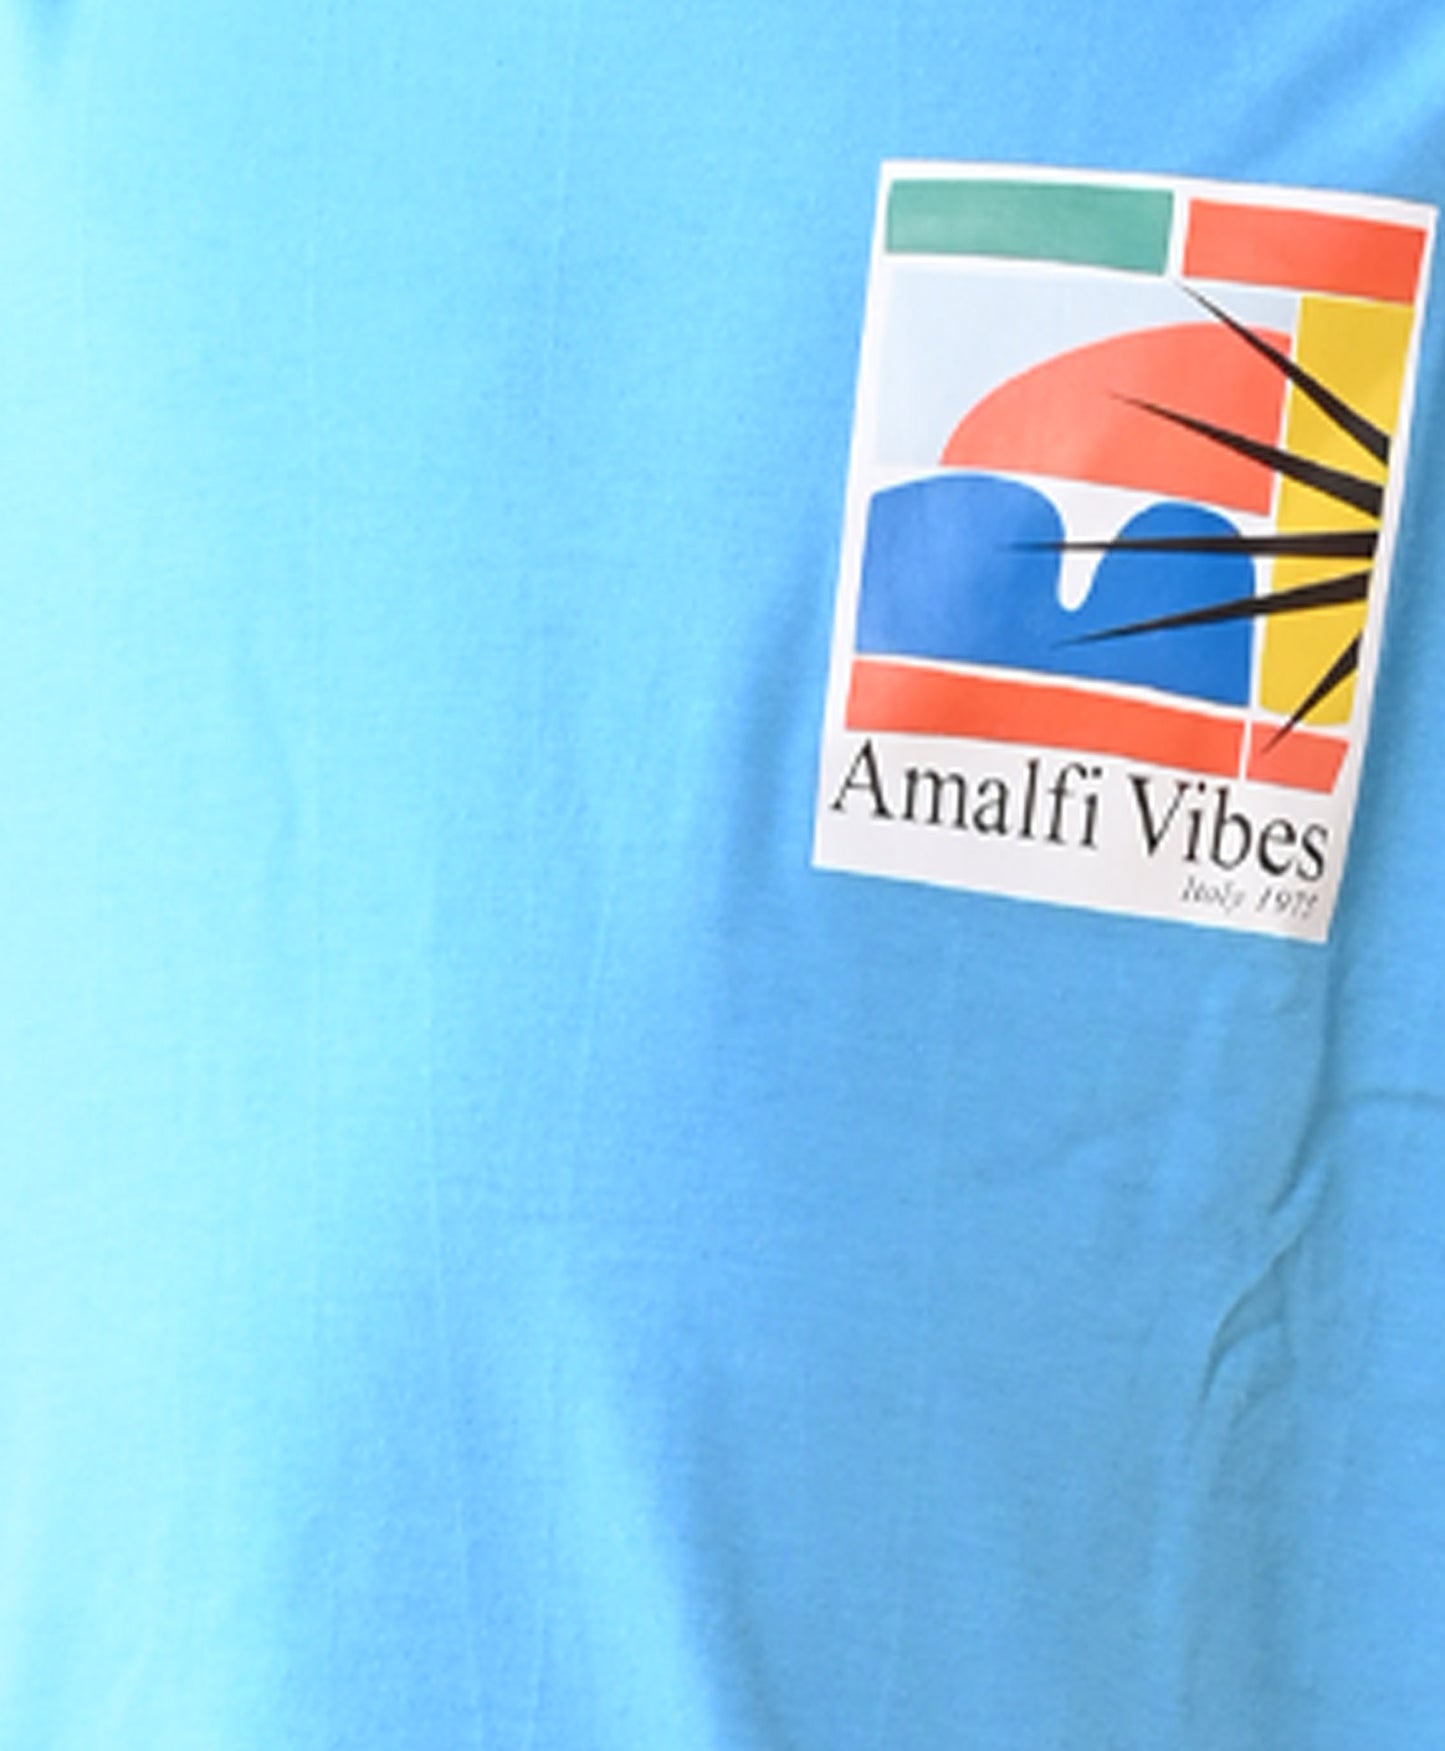 AMALFI VIBES BLUE GREY SHORTS SET - BLUE/GREY